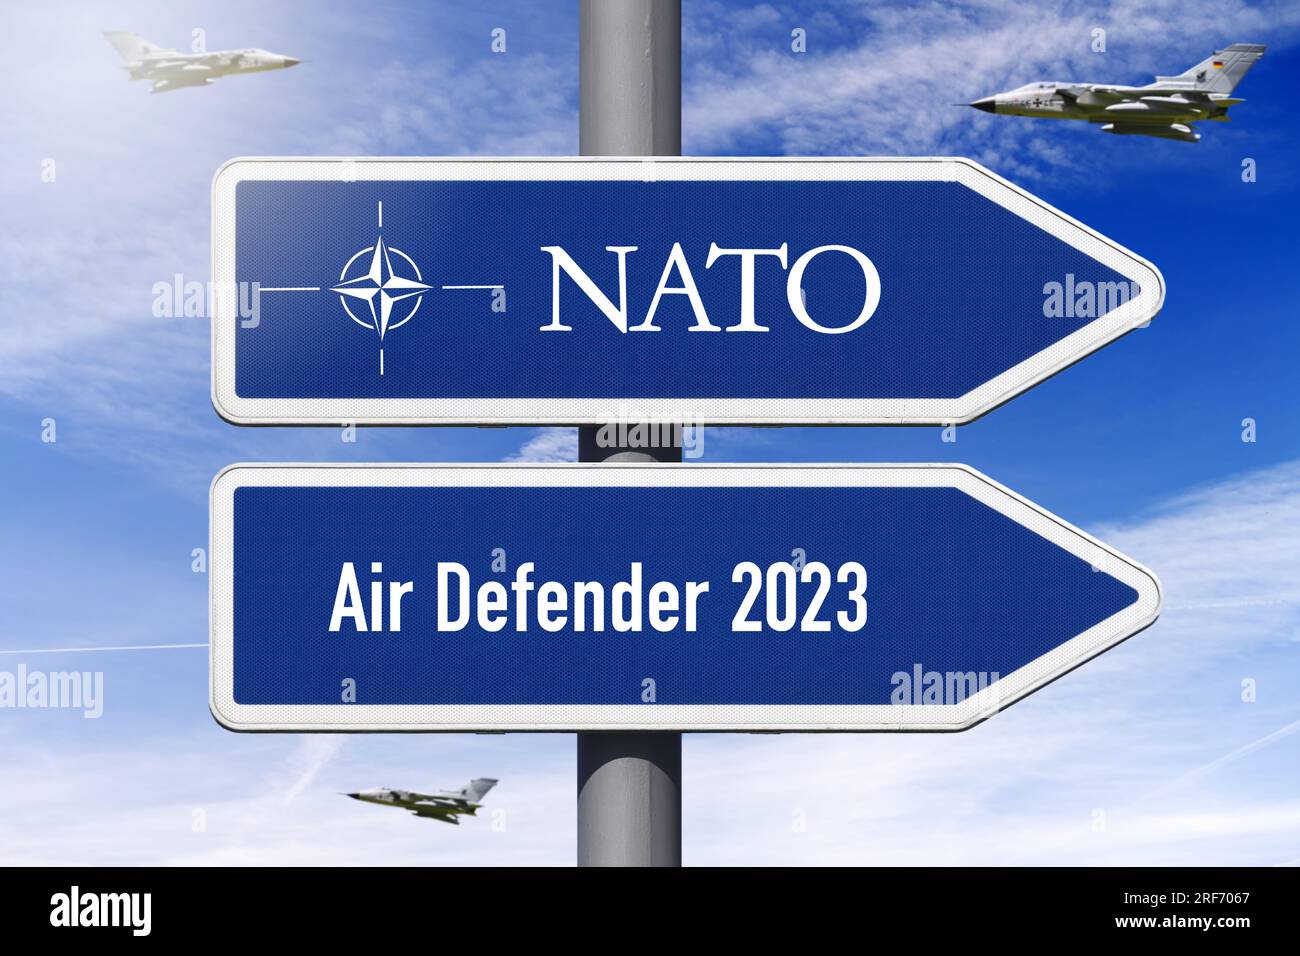 FOTOMONTAGE, Wegweiser mit Aufschrift NATO und Air Defender 2023, NATO-Luftmanöver Foto Stock